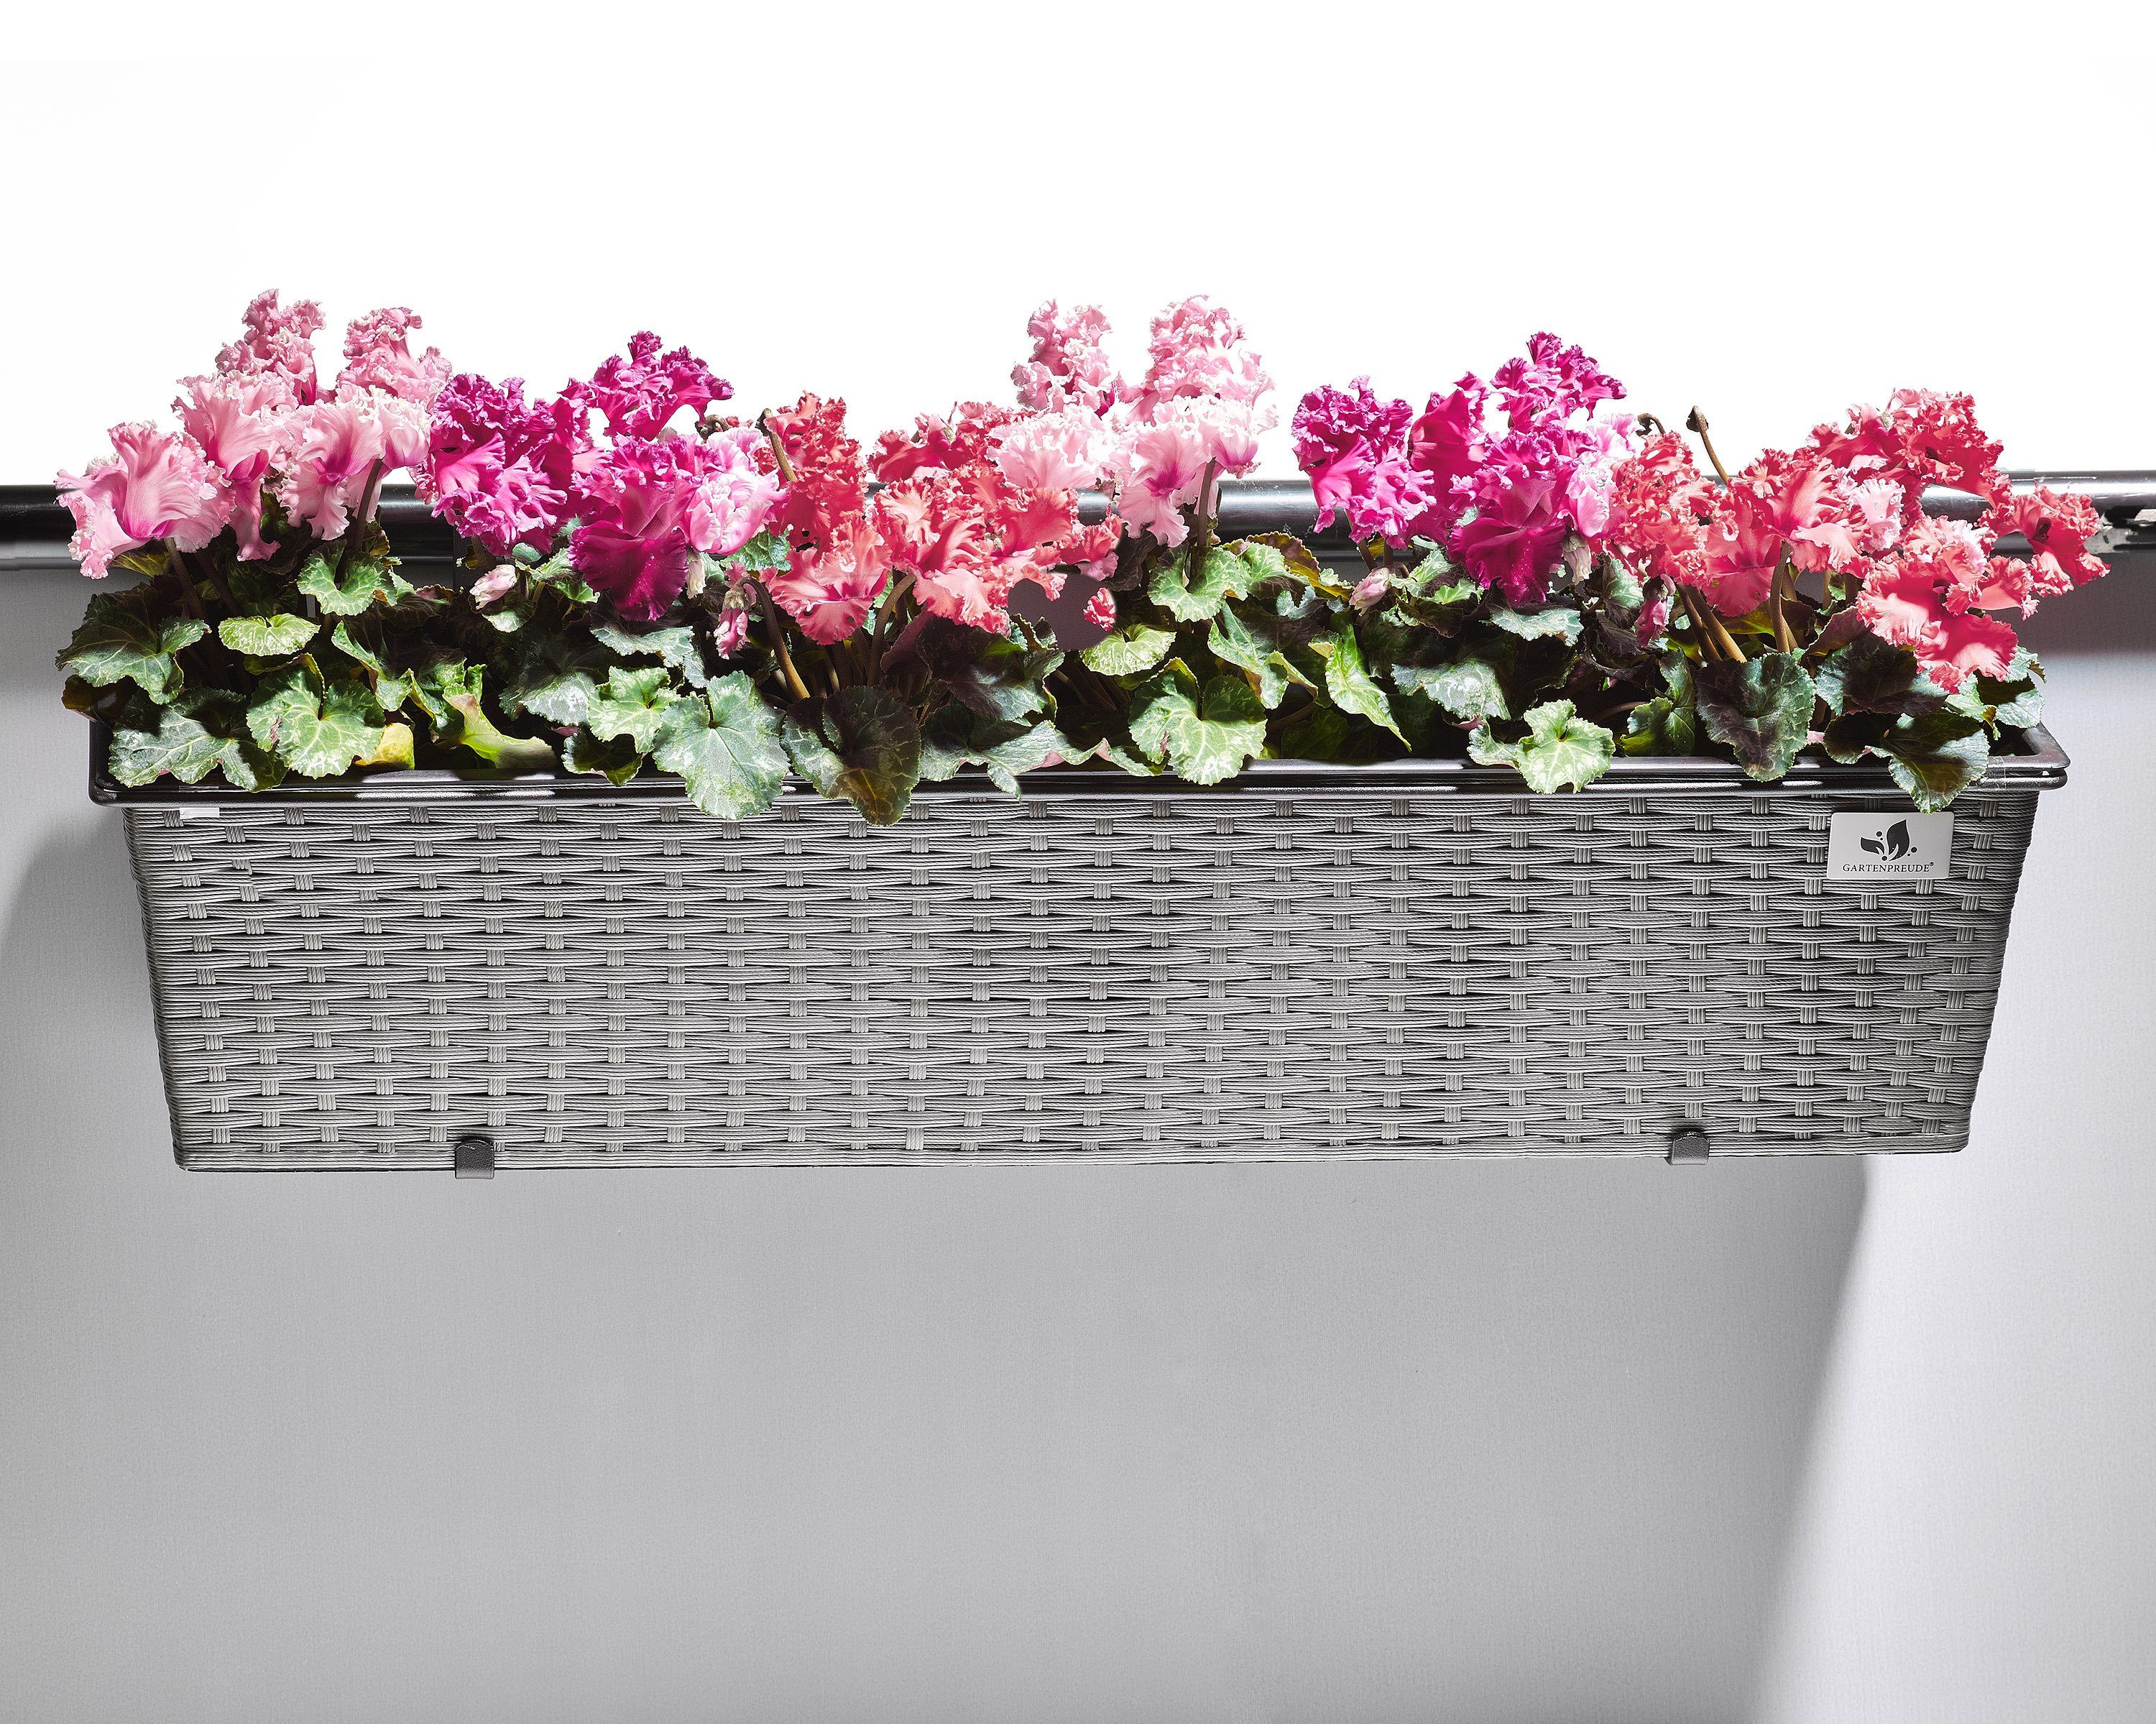 Balkonkasten Pflanzkasten Gartenfreude Blumenkasten geflecht Grau